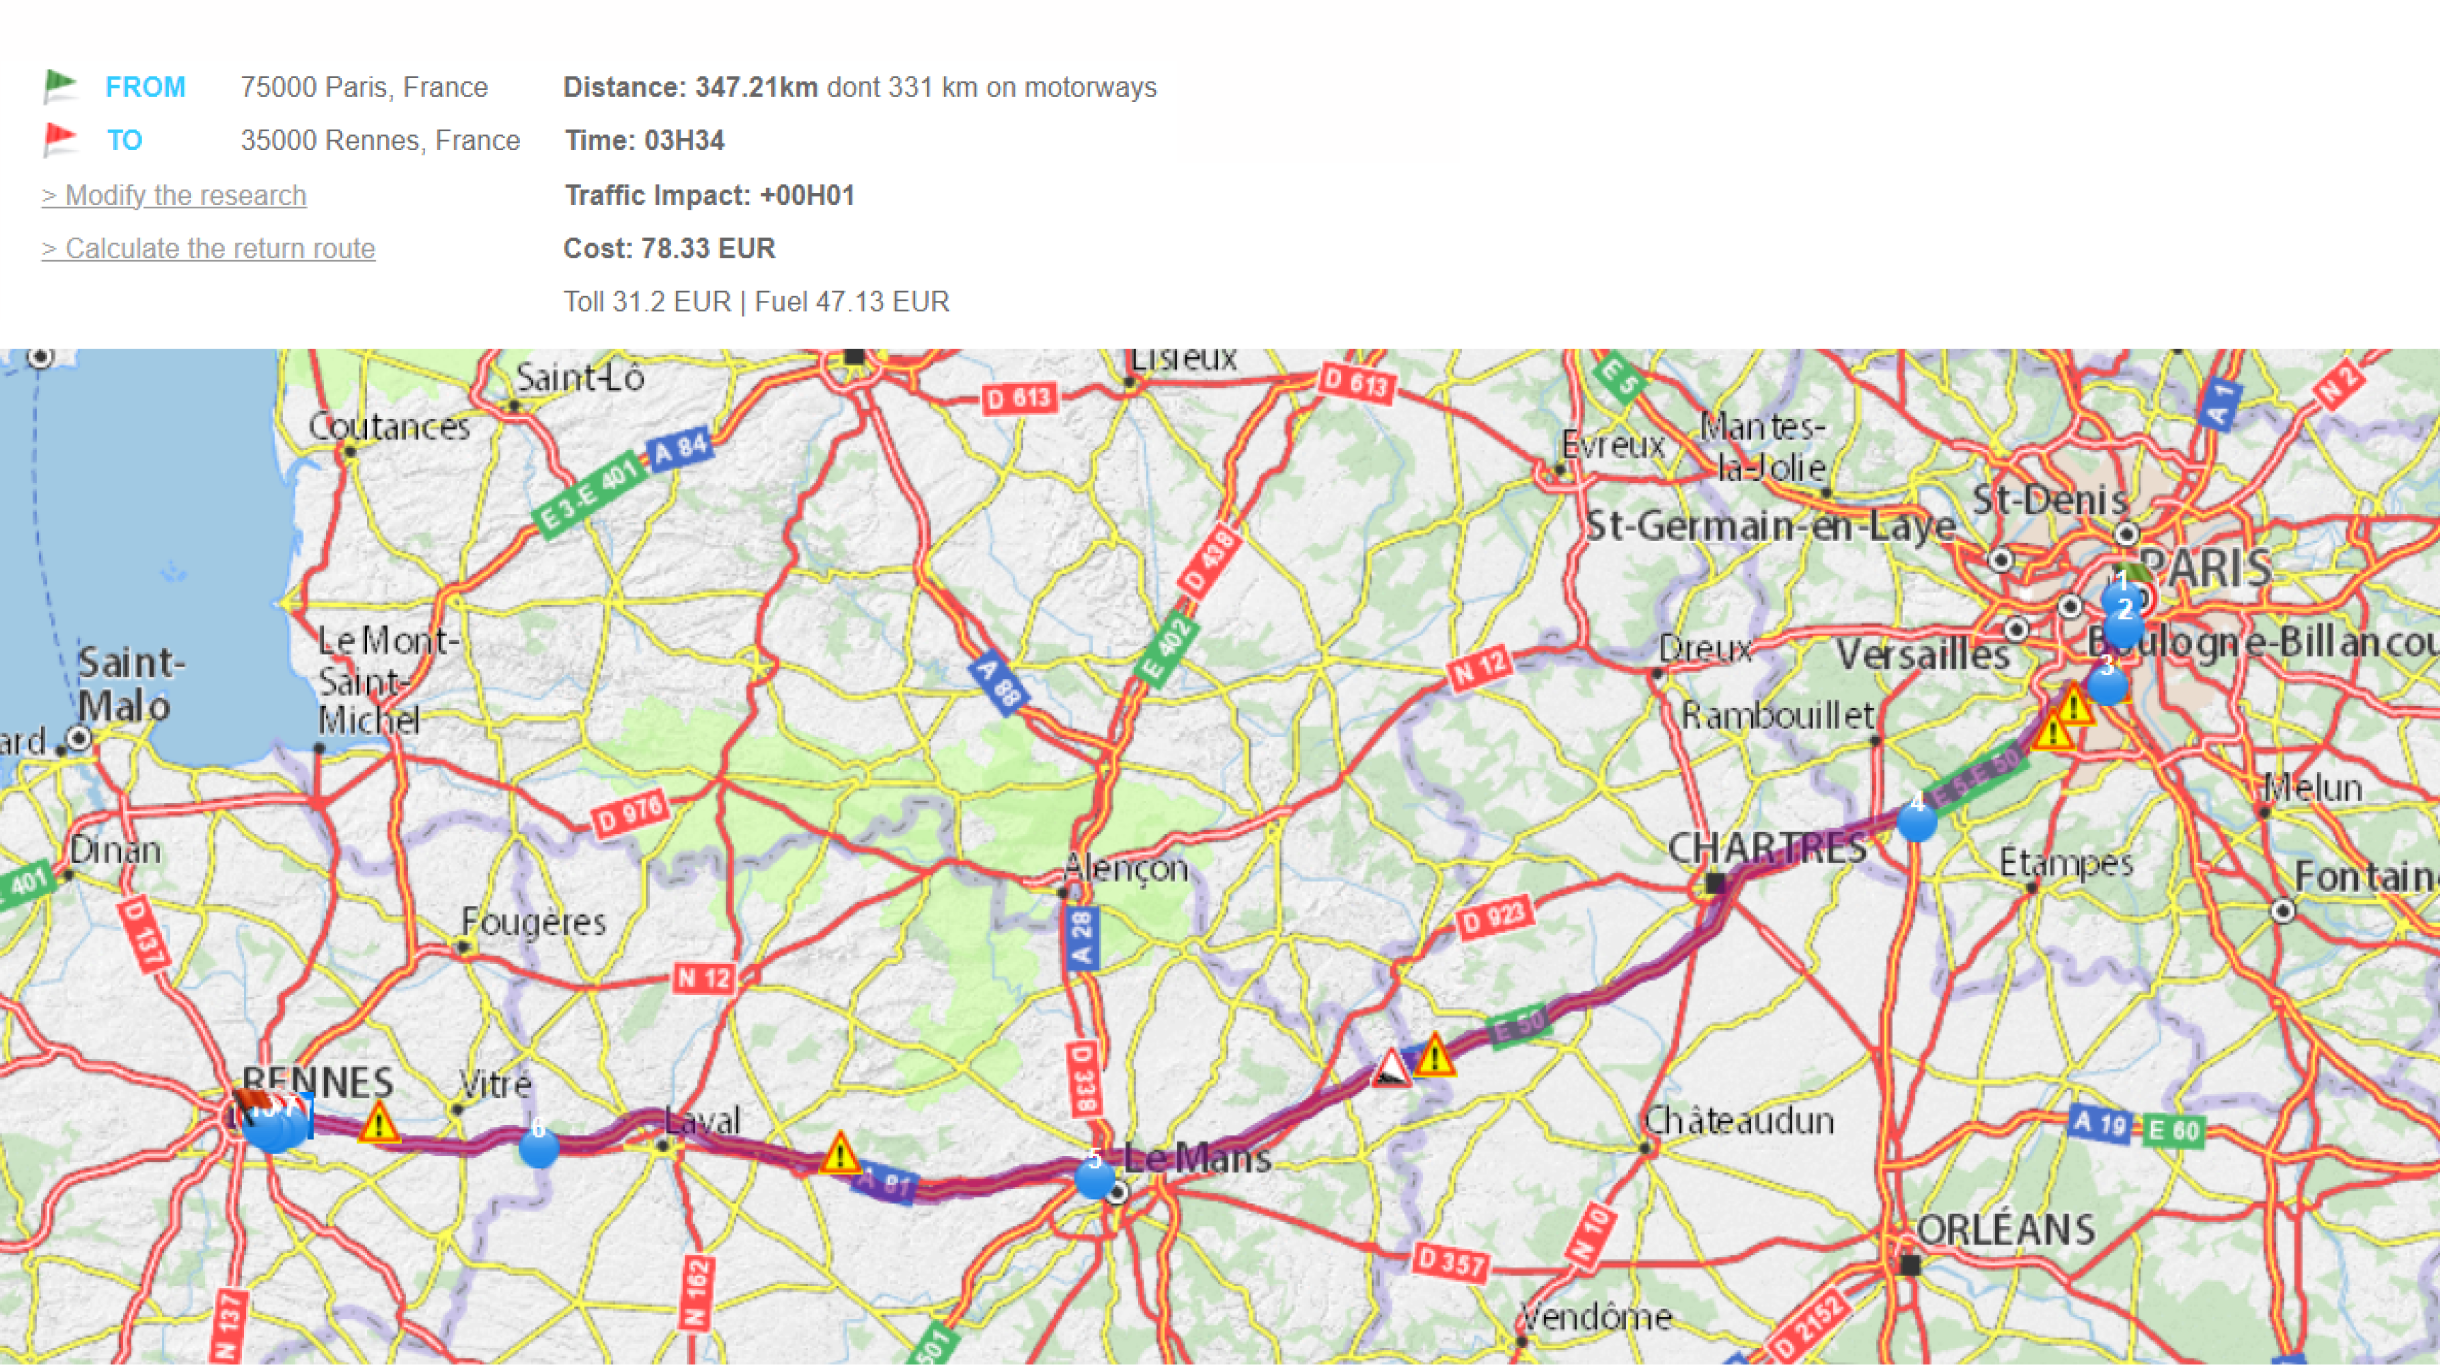 Участок автомобильного сообщения между Парижем и Ренном с официального сайта